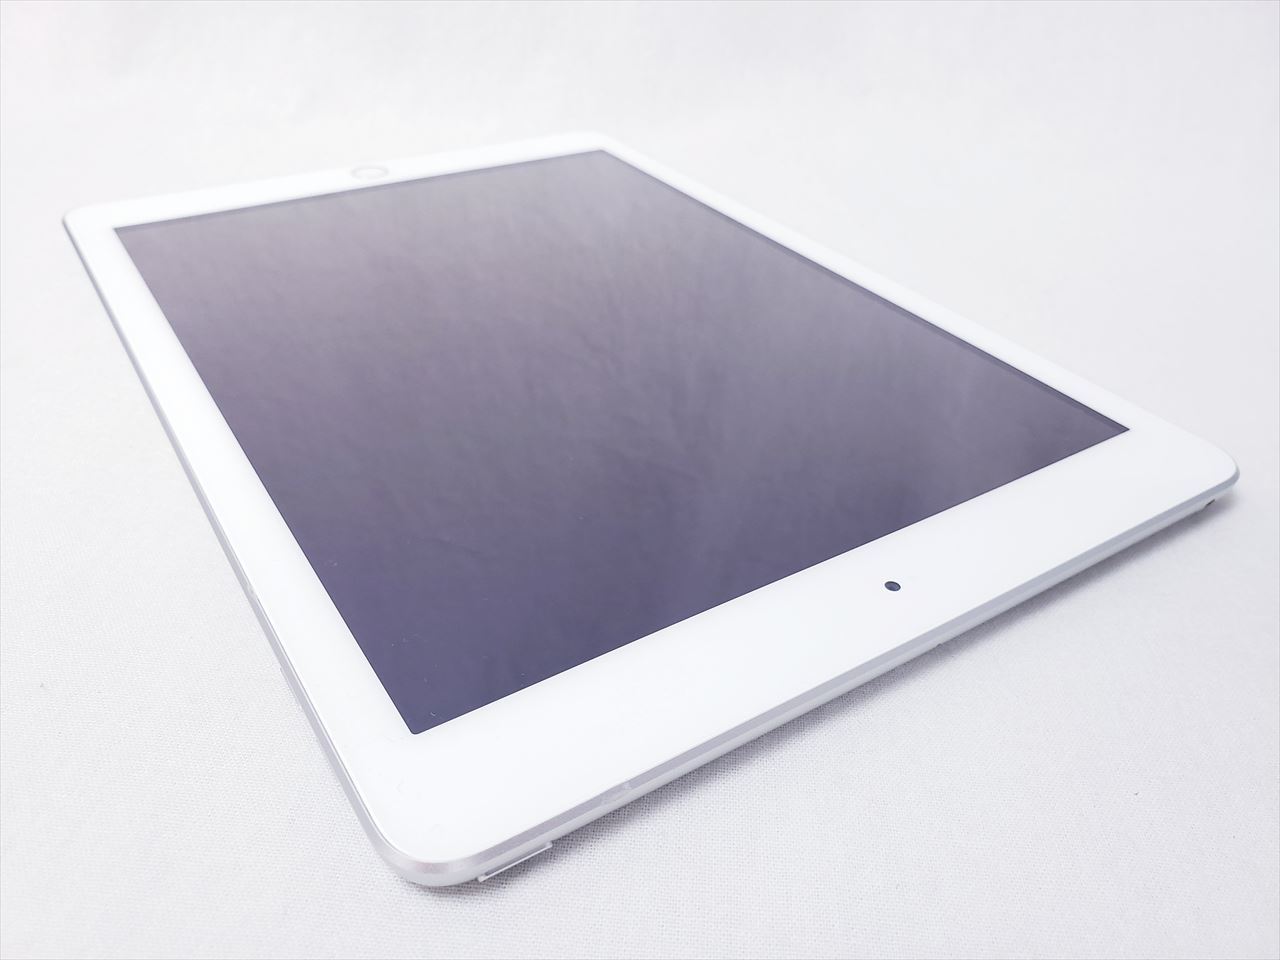 大人気定番商品 iPad 第5世代 32GB シルバー タブレット